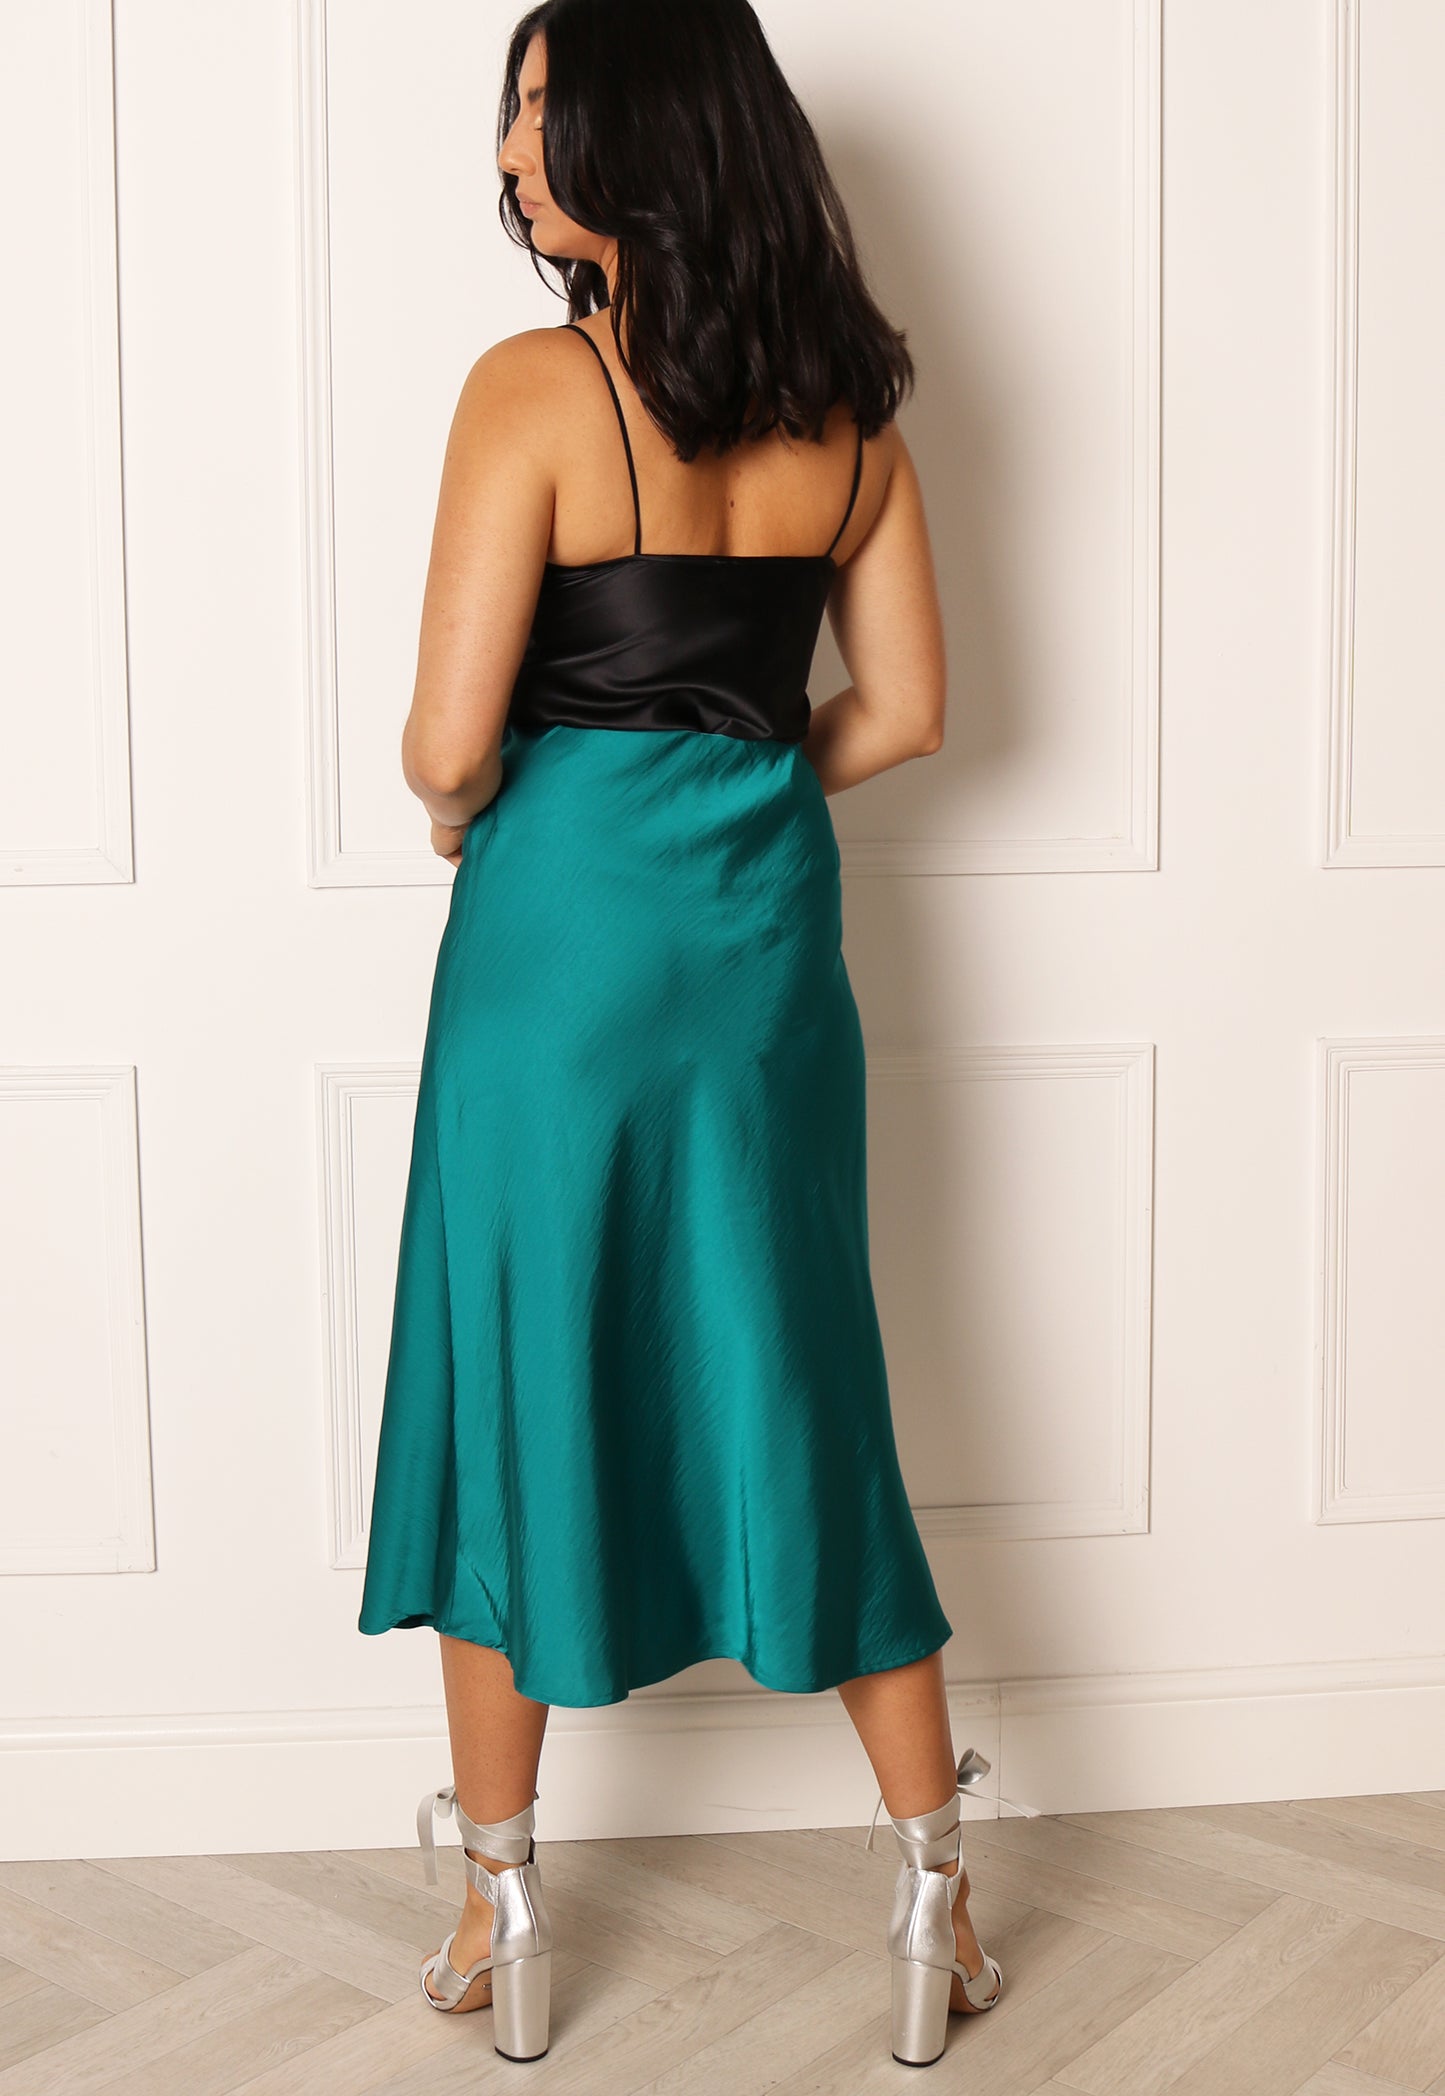 
                  
                    YAS Pastella Bias Cut Satin Midi Slip Skirt in Teal Green - One Nation Clothing
                  
                